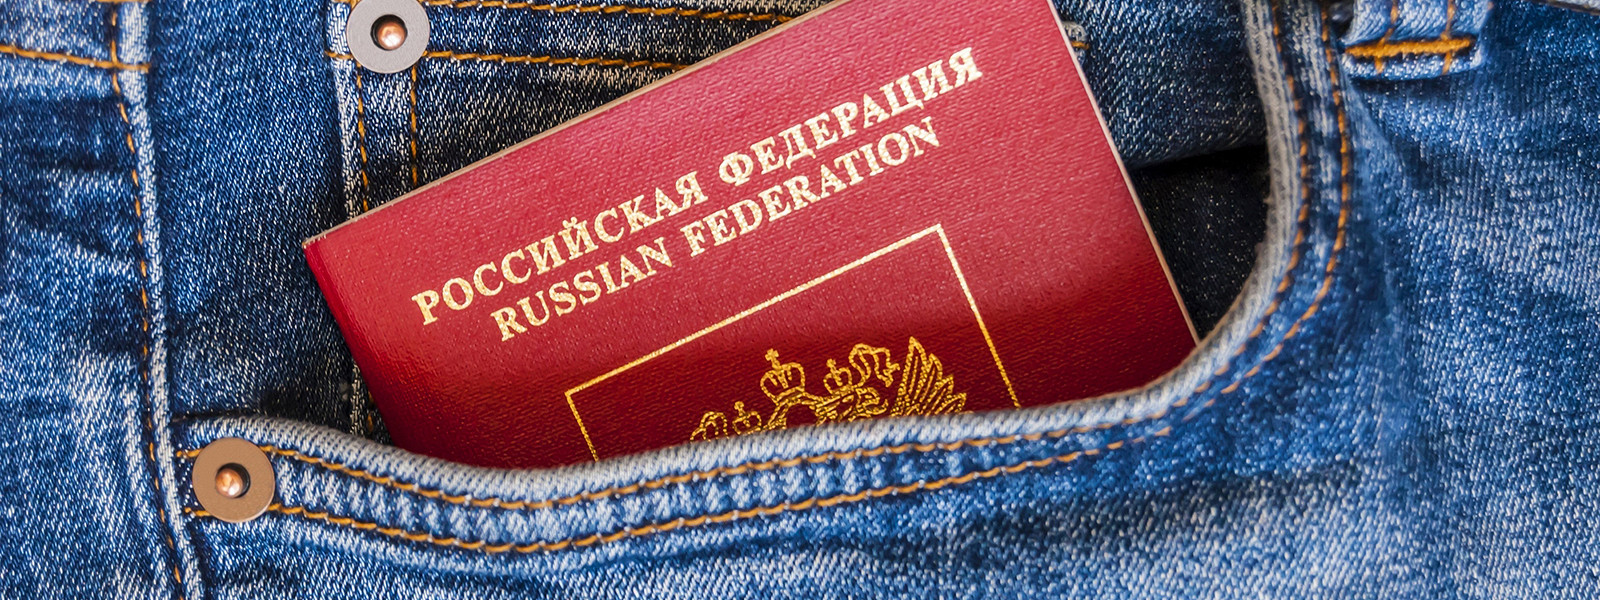 Журнал/Сколько россиян имеют загранпаспорт?